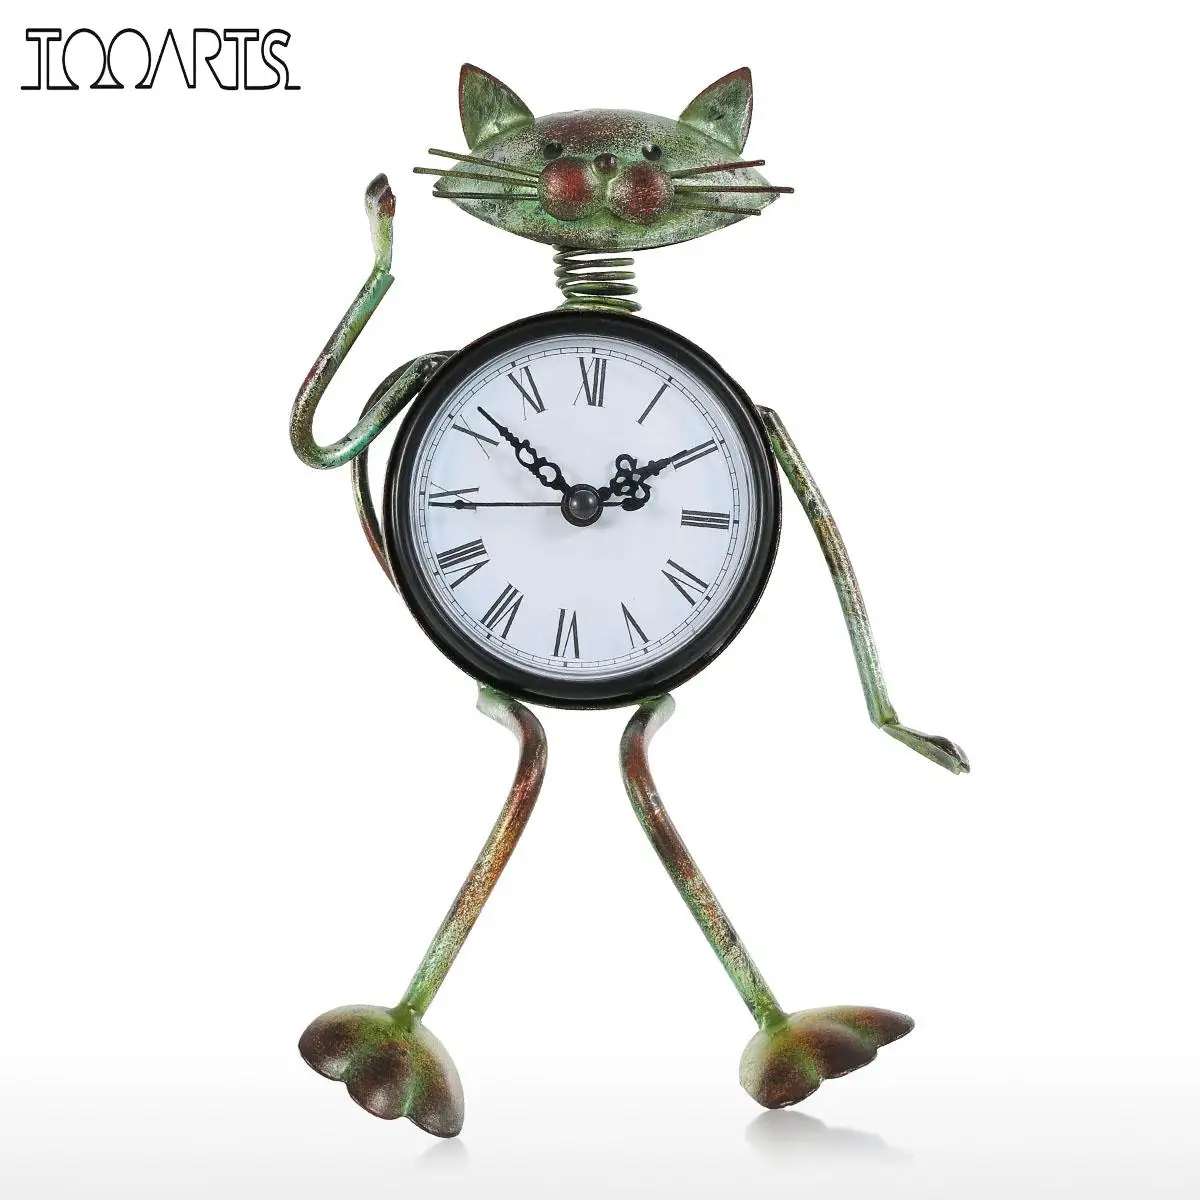 Tooarts Cat винтажные часы ручной работы Винтаж Металл Железный Кот фигурка немой настольные часы практичный будильник металлическая скульптура